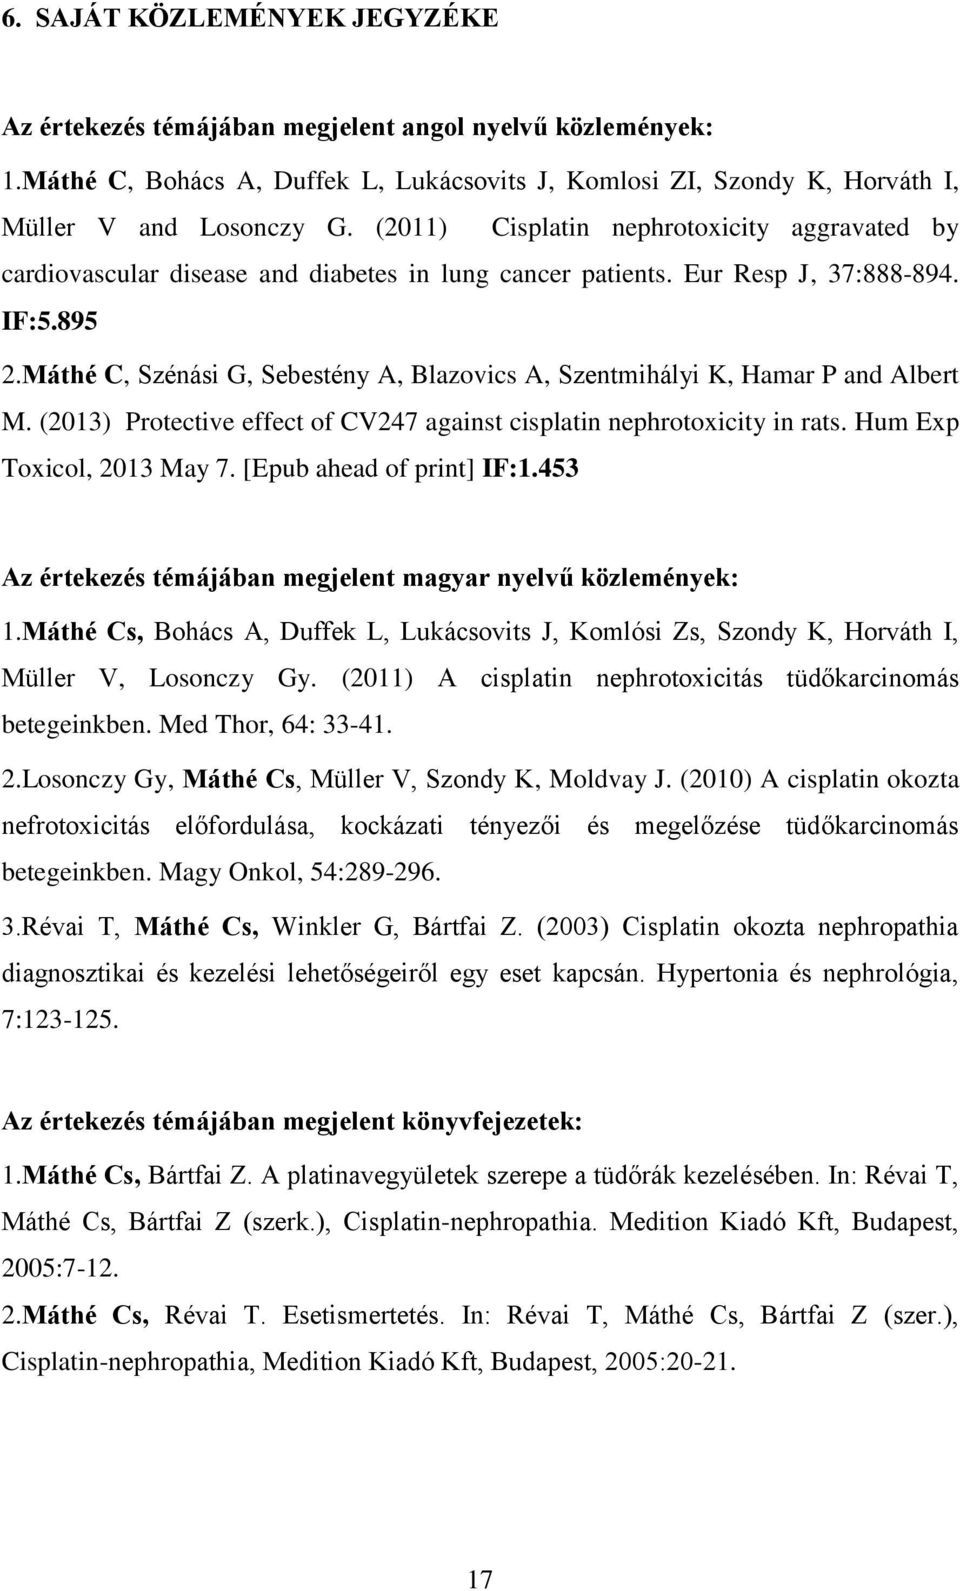 Máthé C, Szénási G, Sebestény A, Blazovics A, Szentmihályi K, Hamar P and Albert M. (2013) Protective effect of CV247 against cisplatin nephrotoxicity in rats. Hum Exp Toxicol, 2013 May 7.